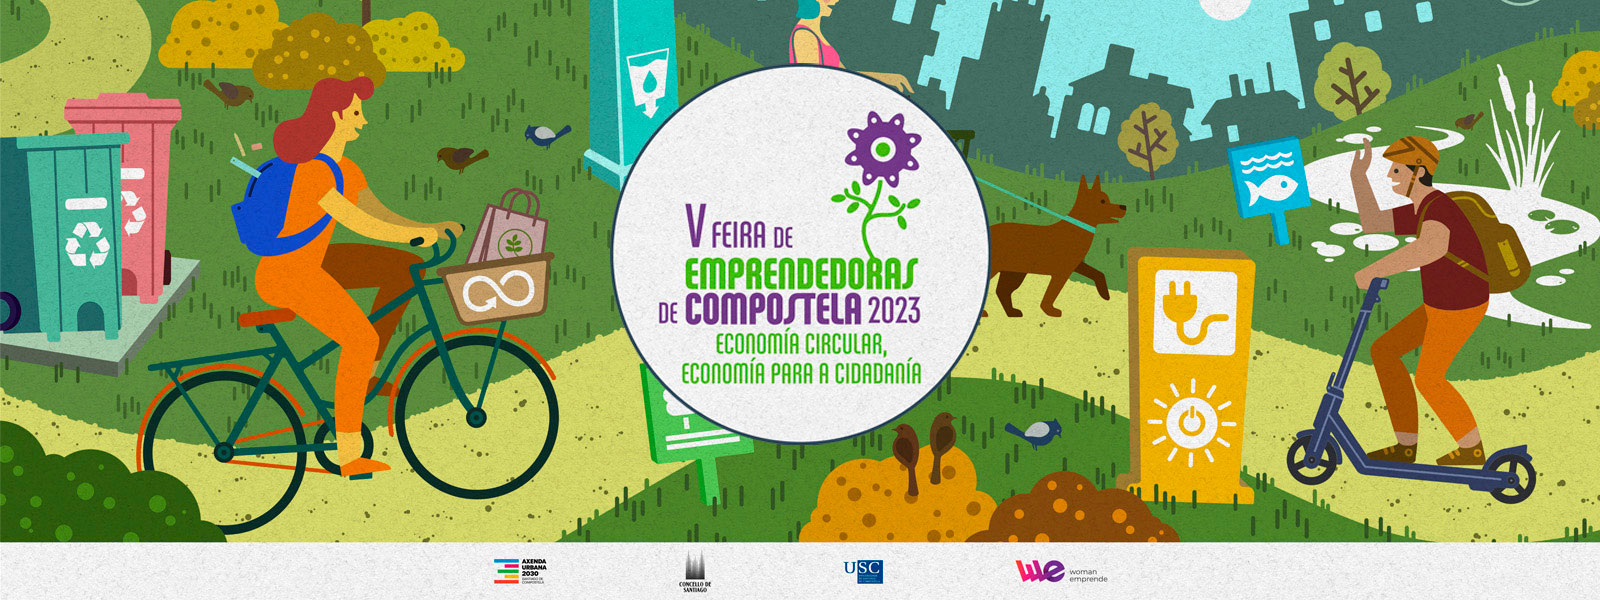 V Feira de Emprendedoras de Compostela: Economía Circular, Economía para a cidadanía